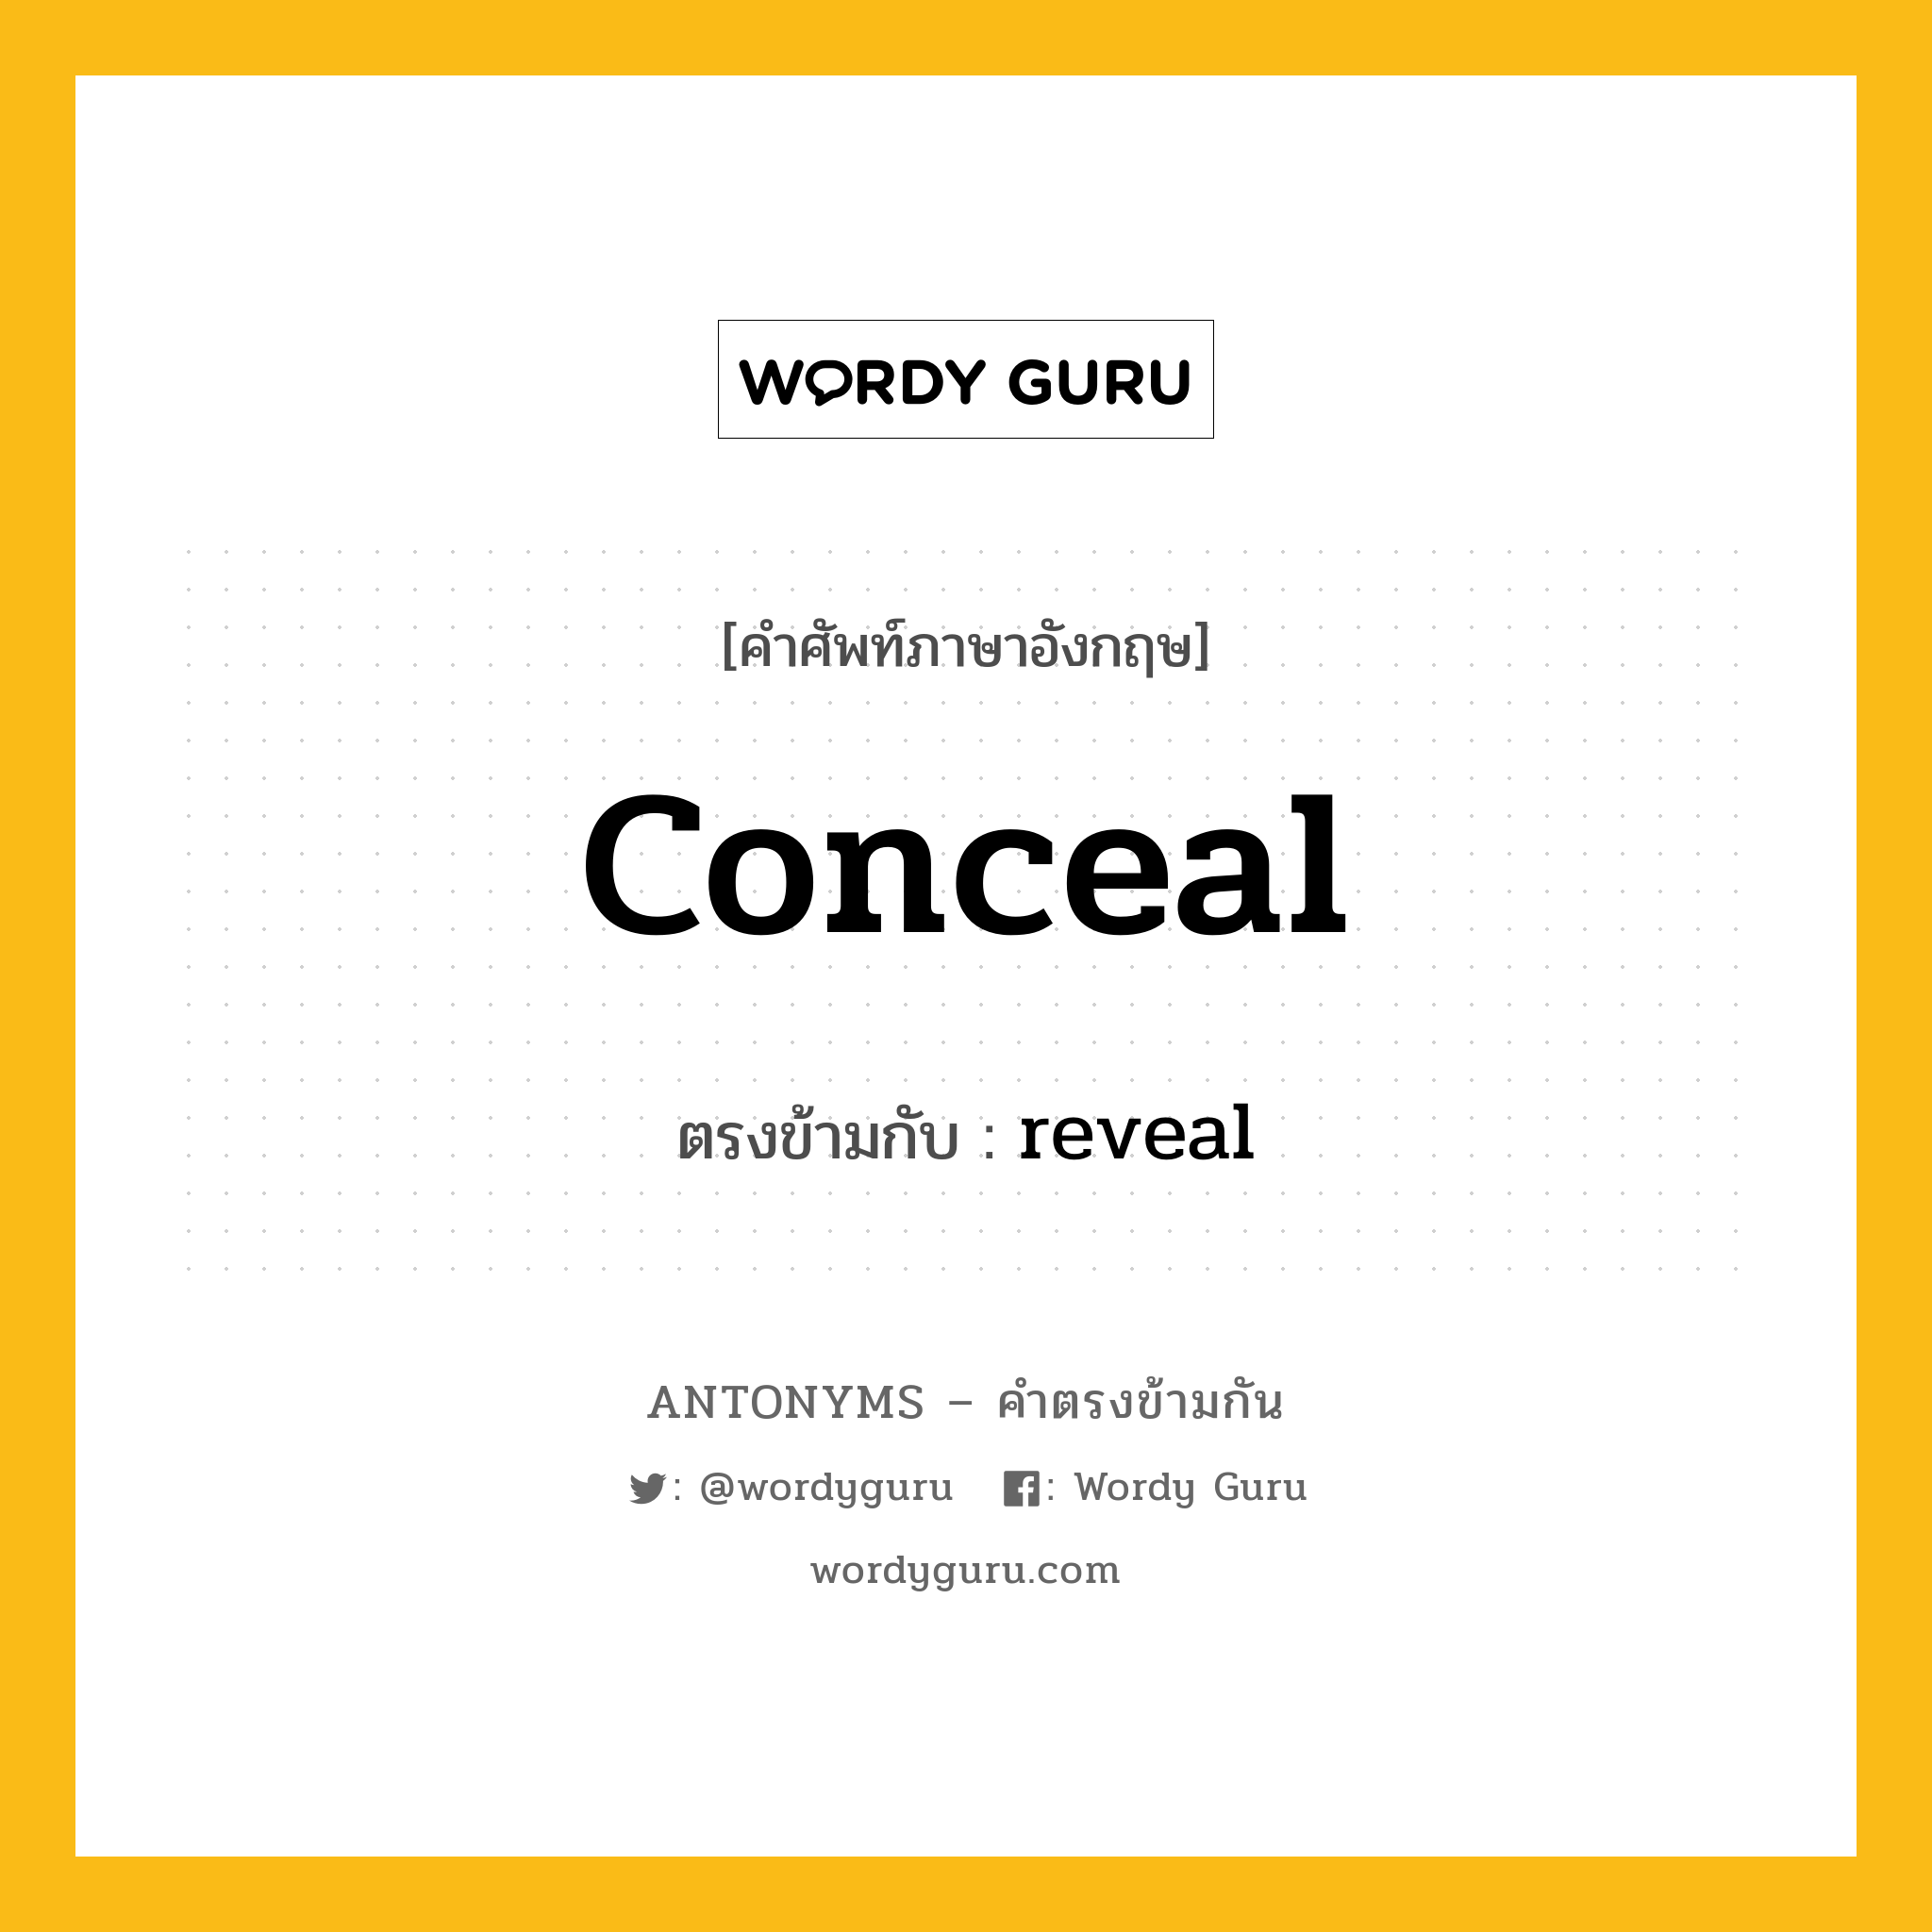 conceal เป็นคำตรงข้ามกับคำไหนบ้าง?, คำศัพท์ภาษาอังกฤษ conceal ตรงข้ามกับ reveal หมวด reveal